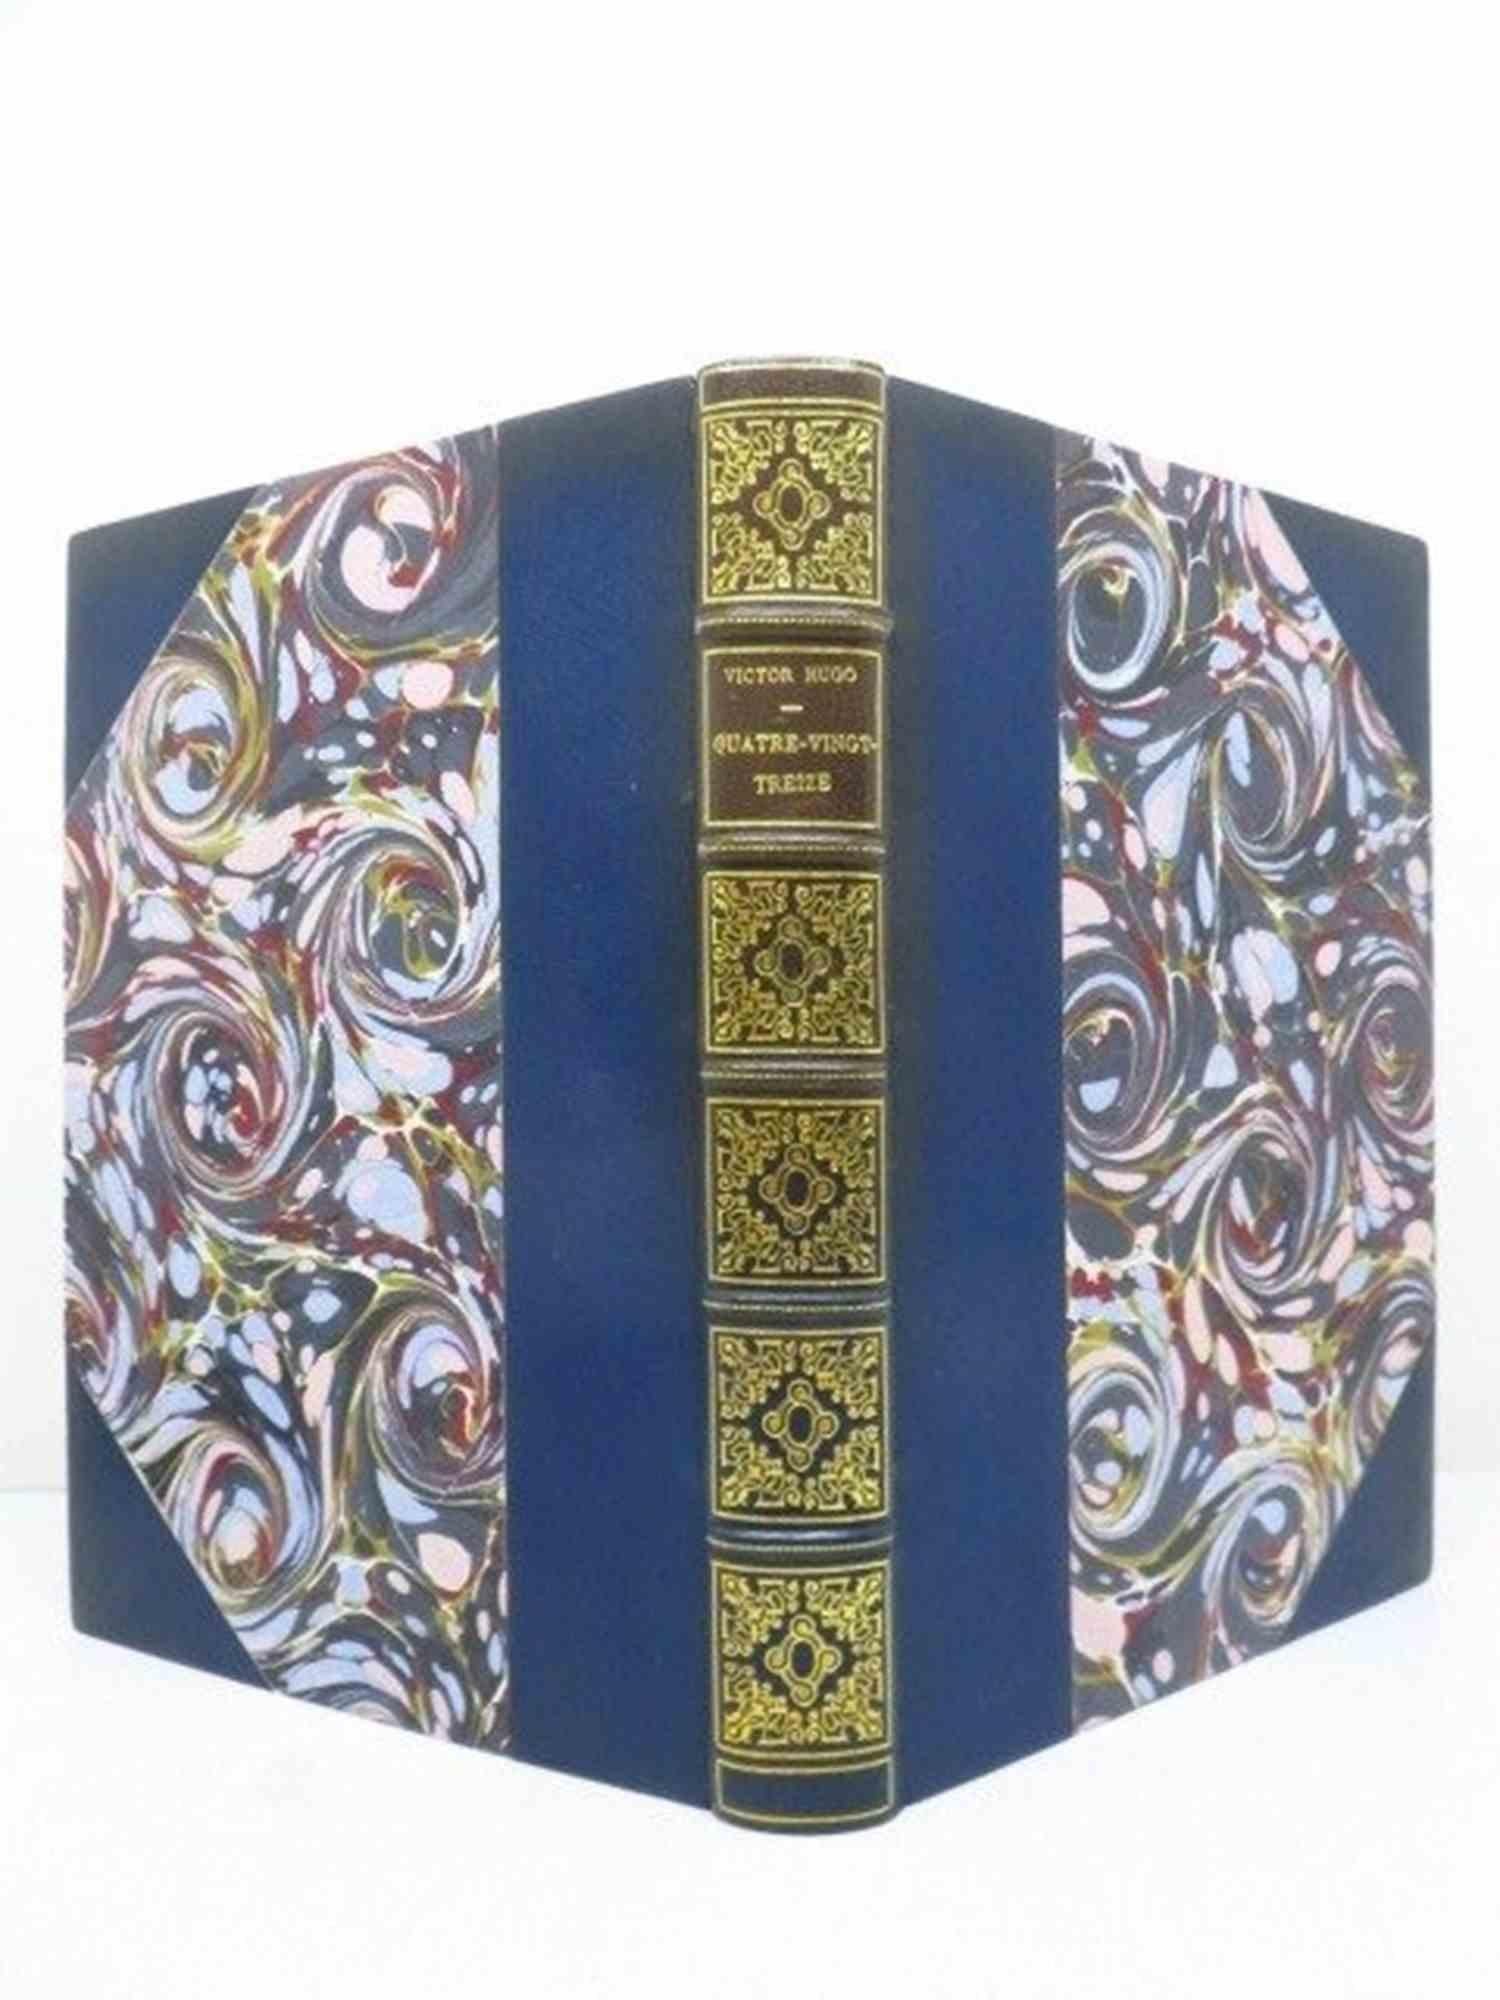 Quatrevingt - Treize - Rare Book by Victor Hugo - 1876 For Sale 1